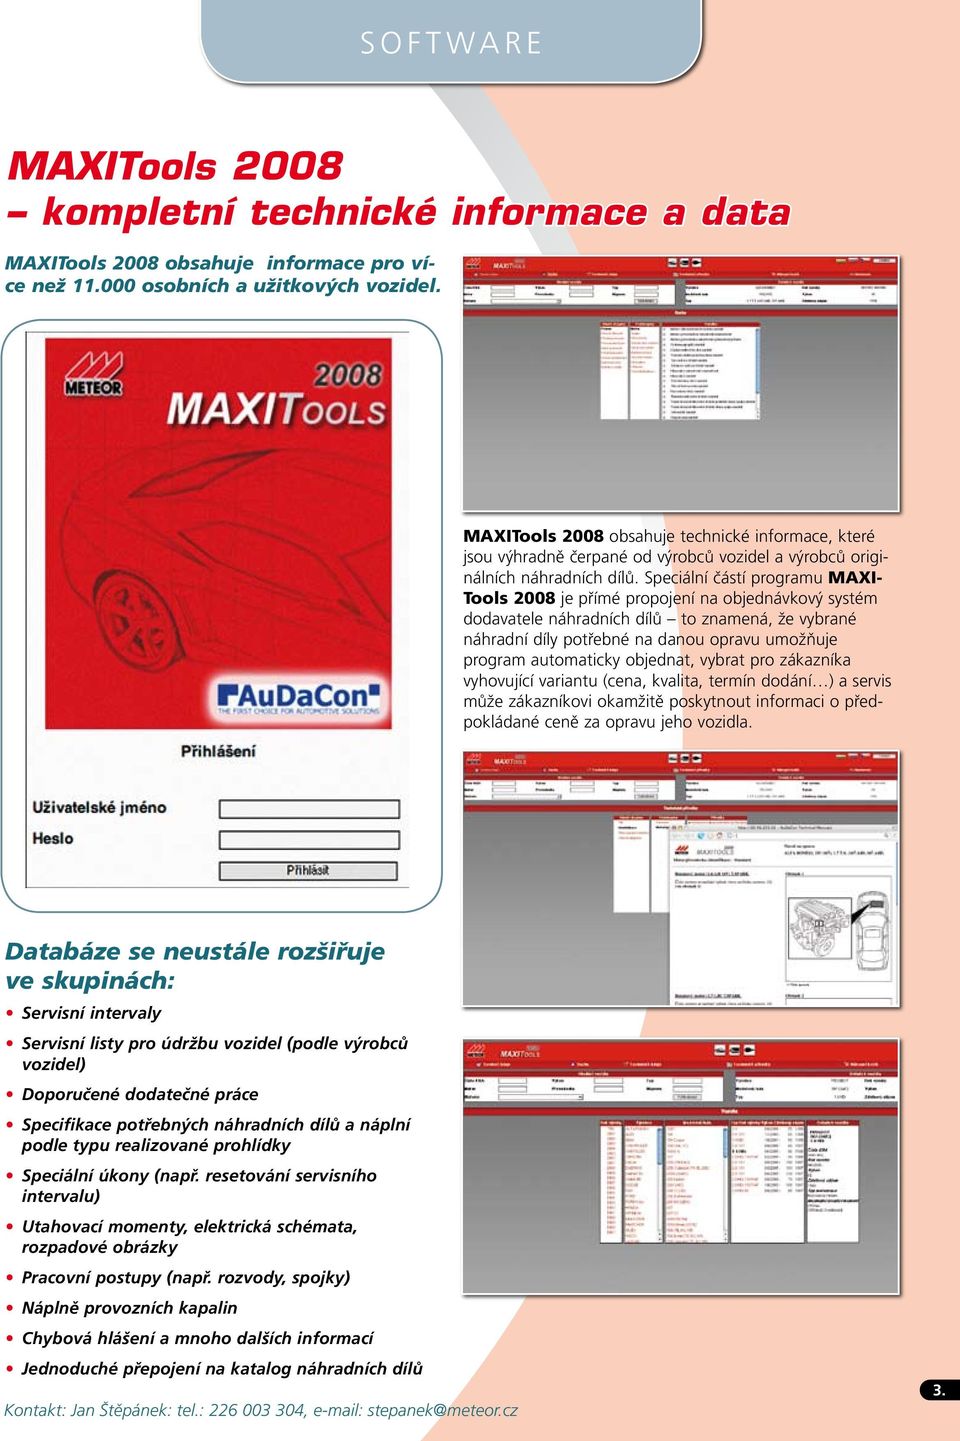 Speciální částí programu MAXI- Tools 2008 je přímé propojení na objednávkový systém dodavatele náhradních dílů to znamená, že vybrané náhradní díly potřebné na danou opravu umožňuje program